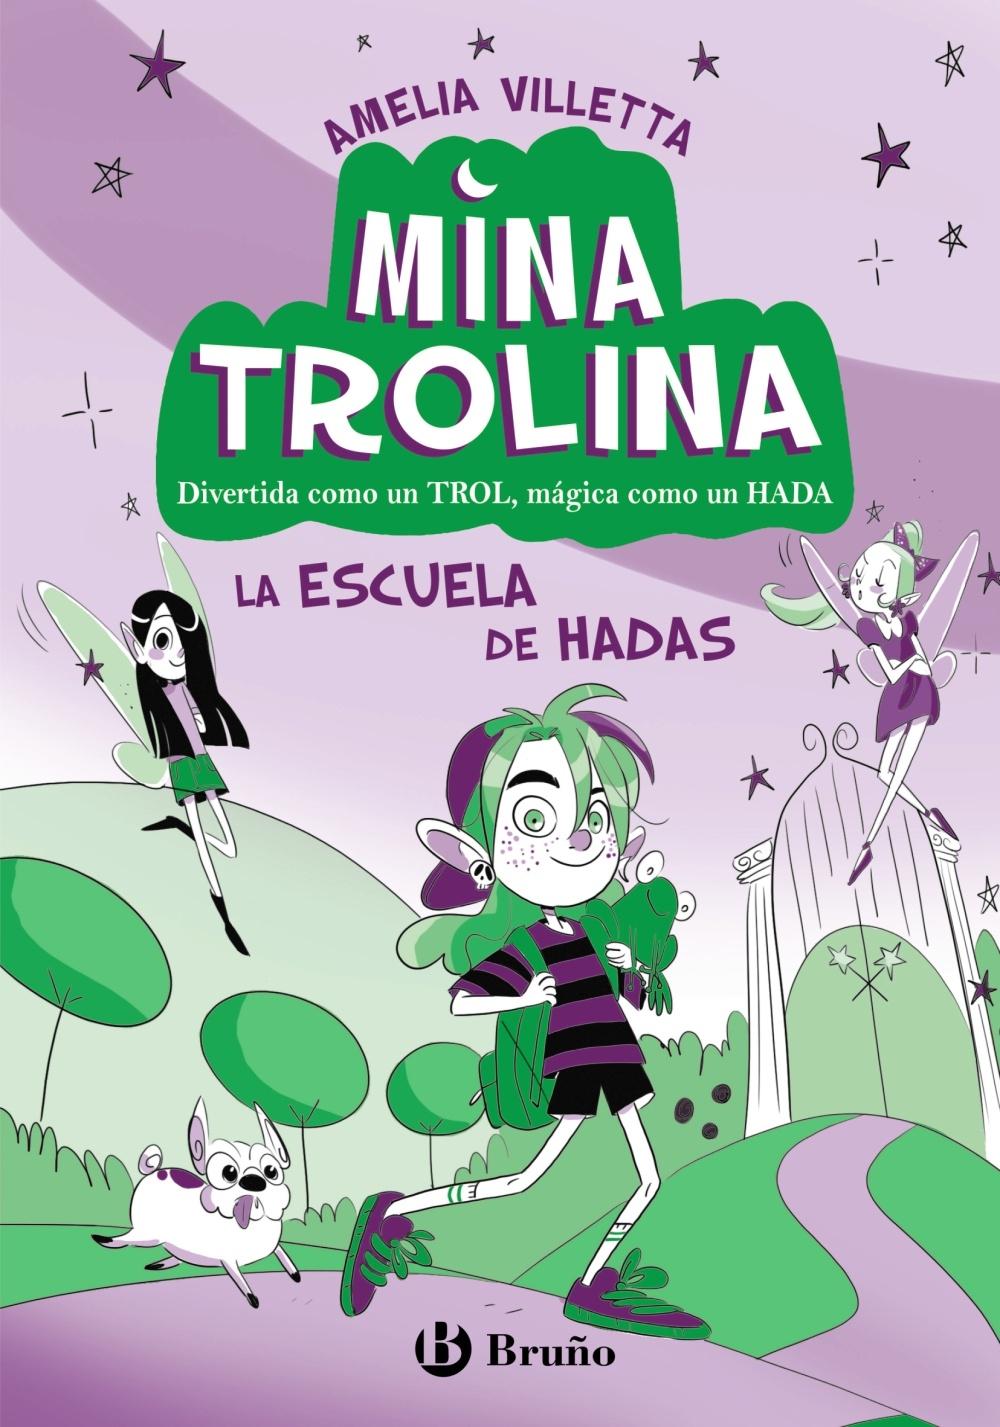 Mina Trolina, 1. la Escuela de Hadas "Divertida como un Trol, Mágica como un Hada". 